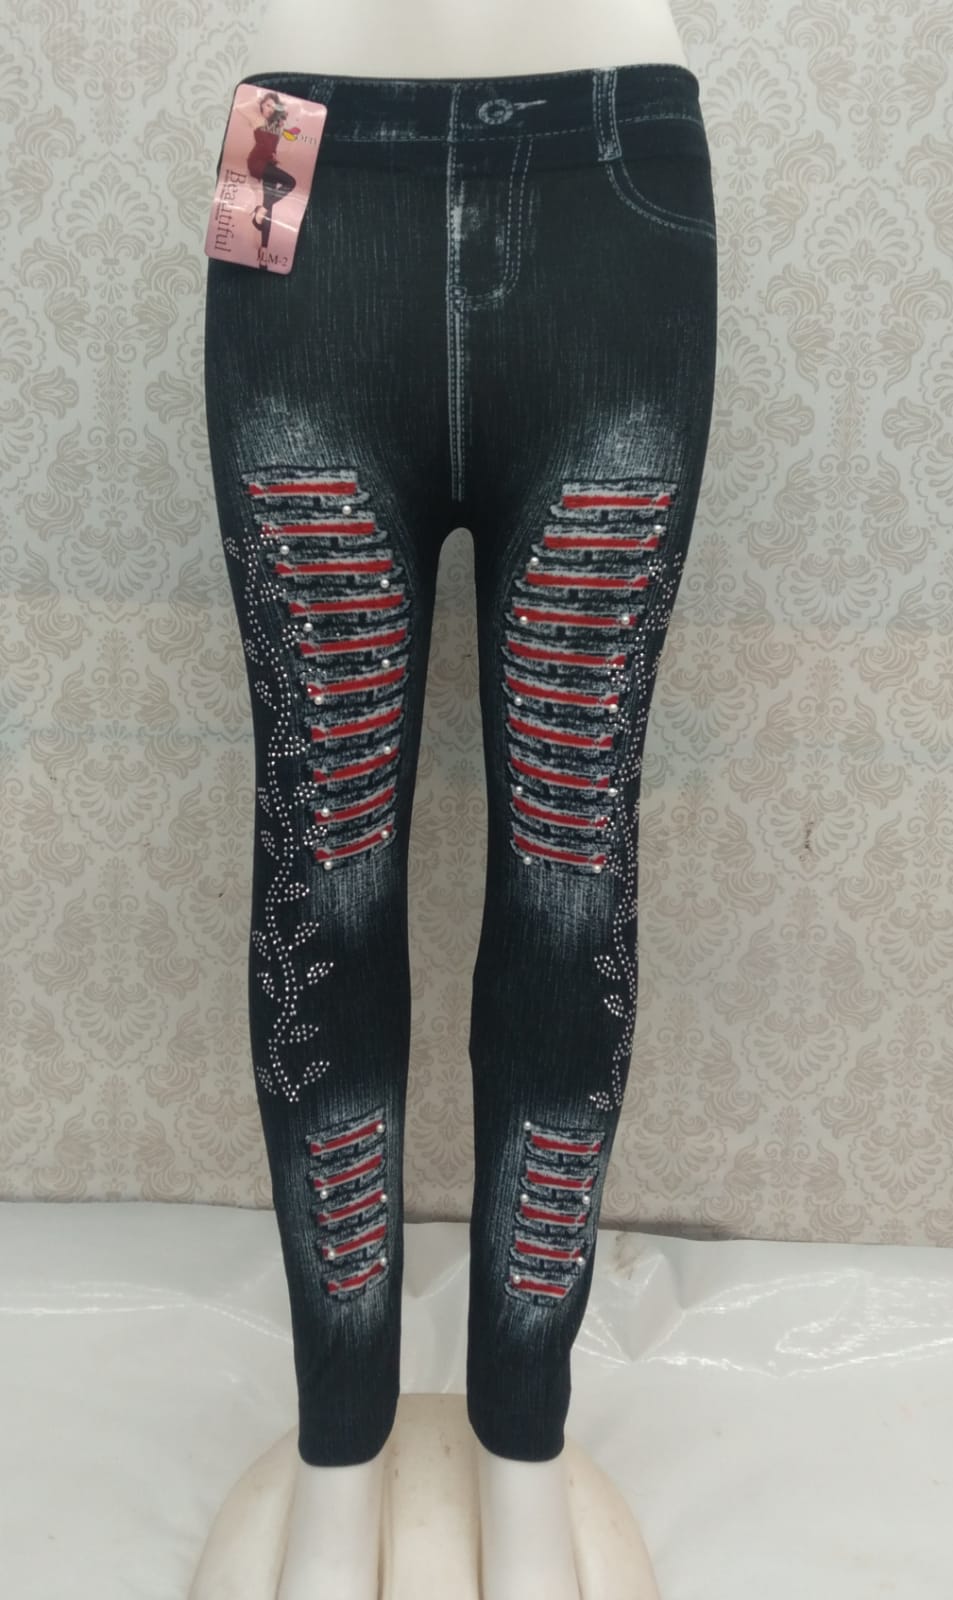 Ladies Printed Legging at Rs 160